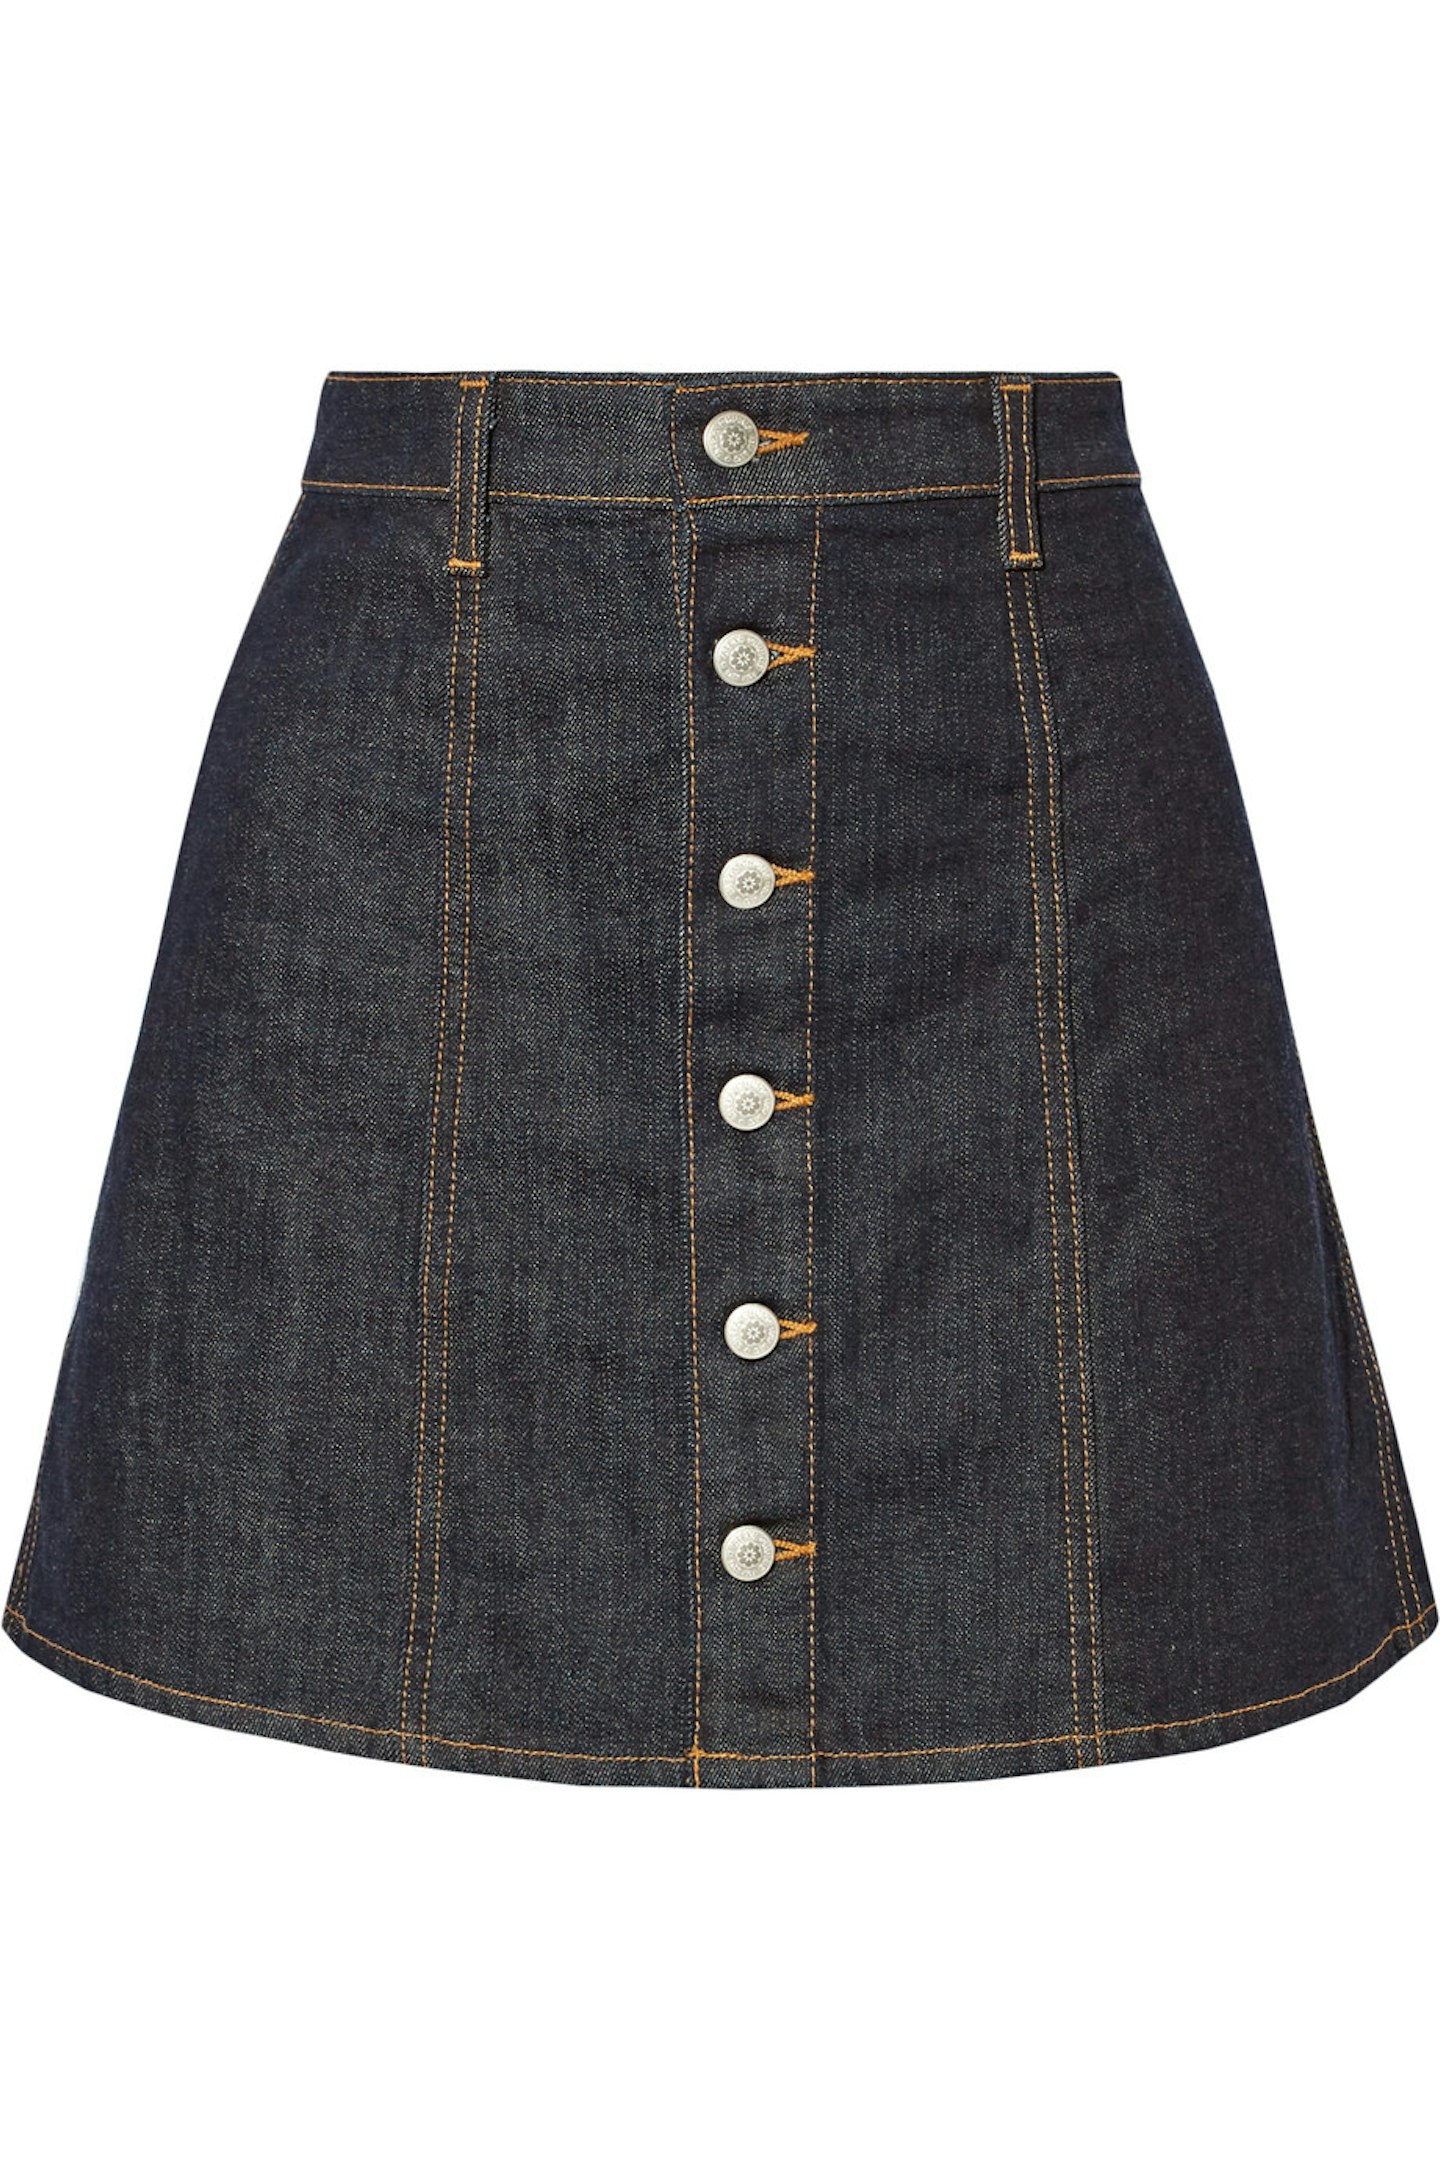 Alexa Chung for AG jeans Kety denim mini skirt £87.50